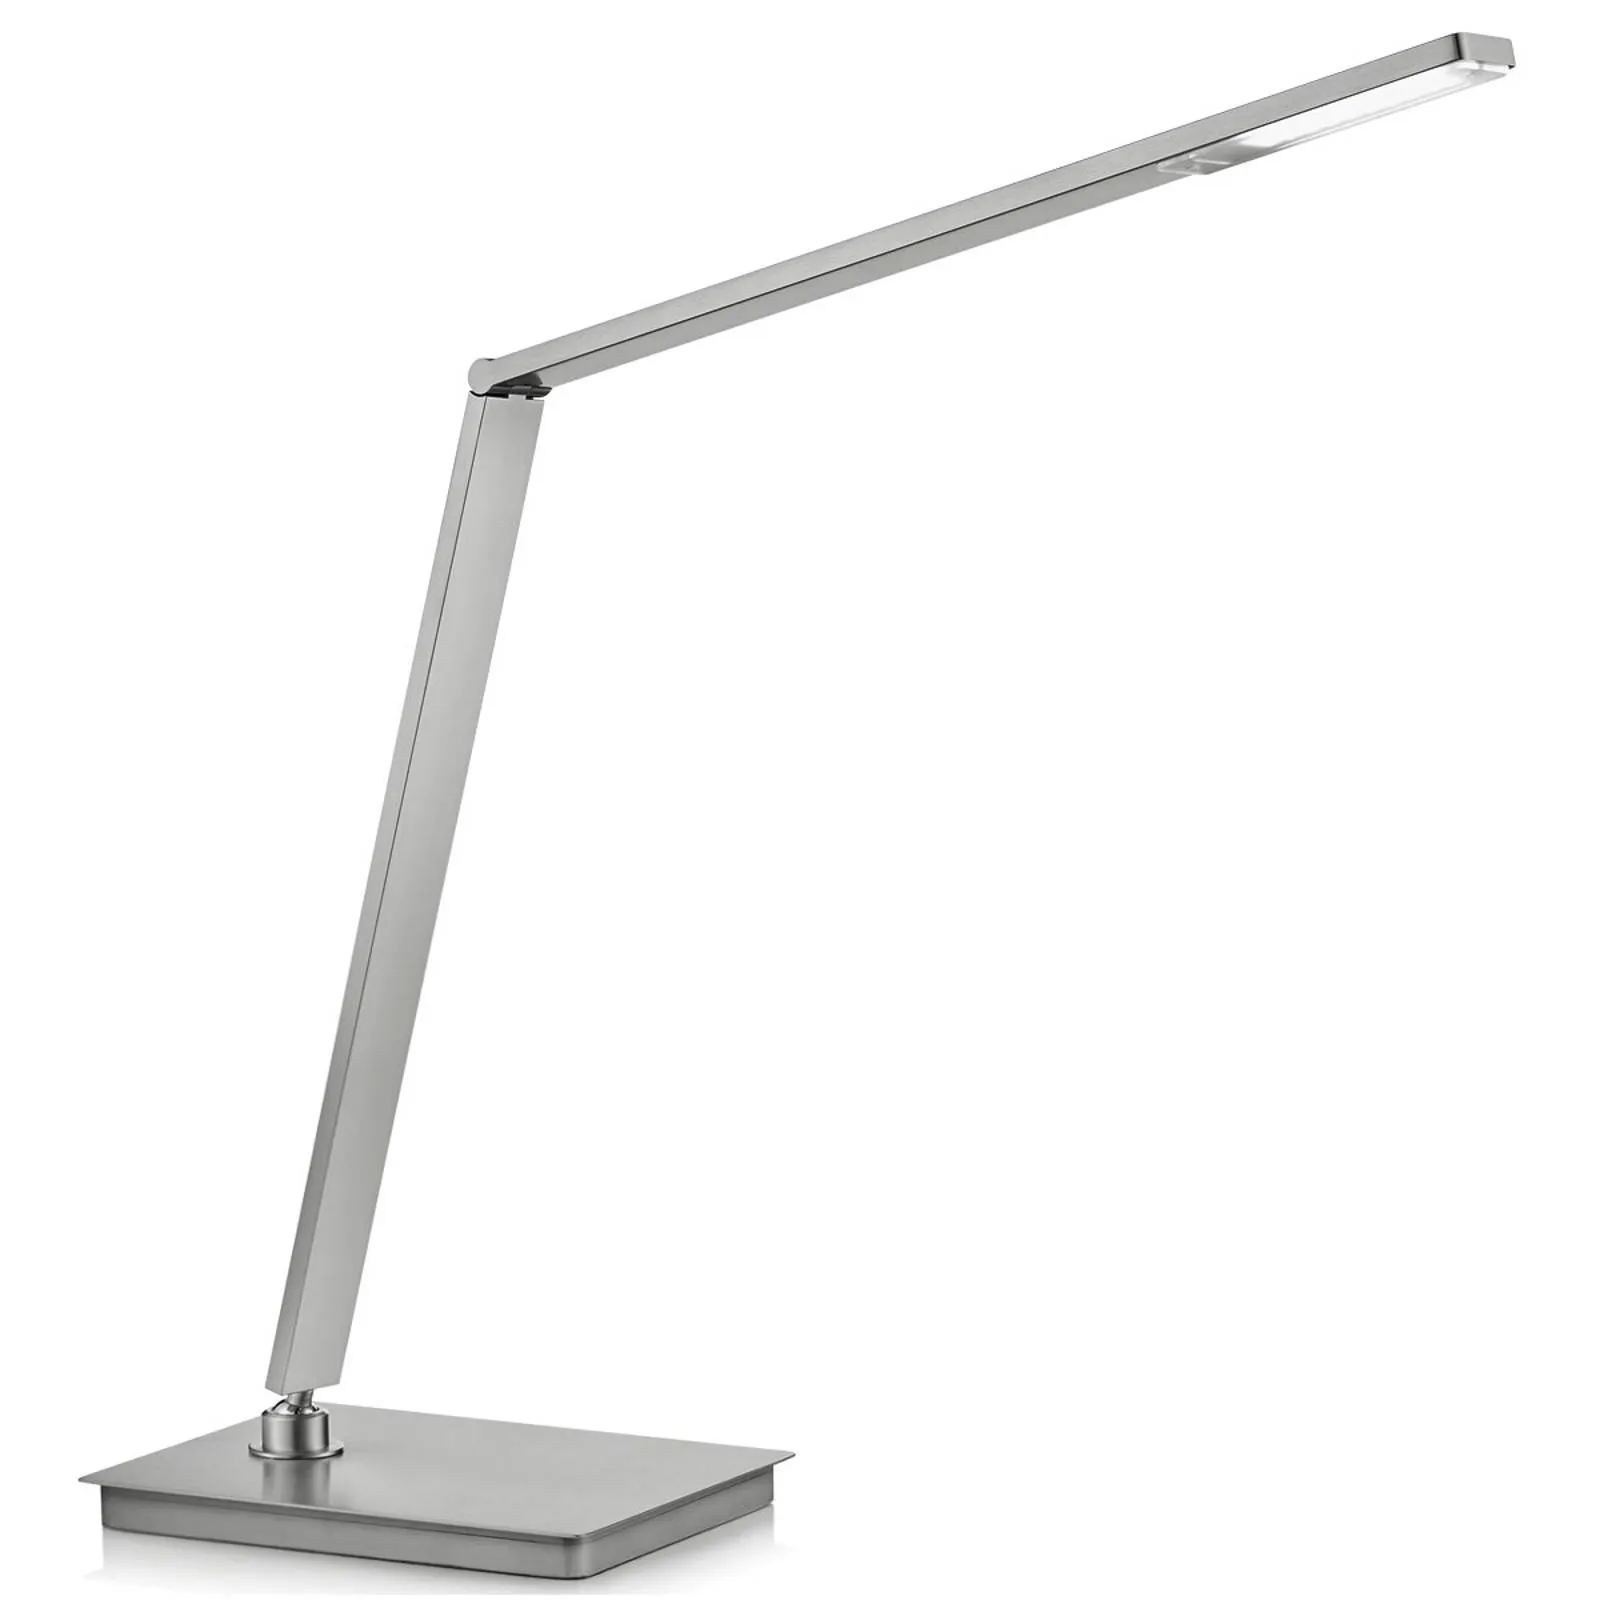 LED desk lamp Omar with sensor for dimming